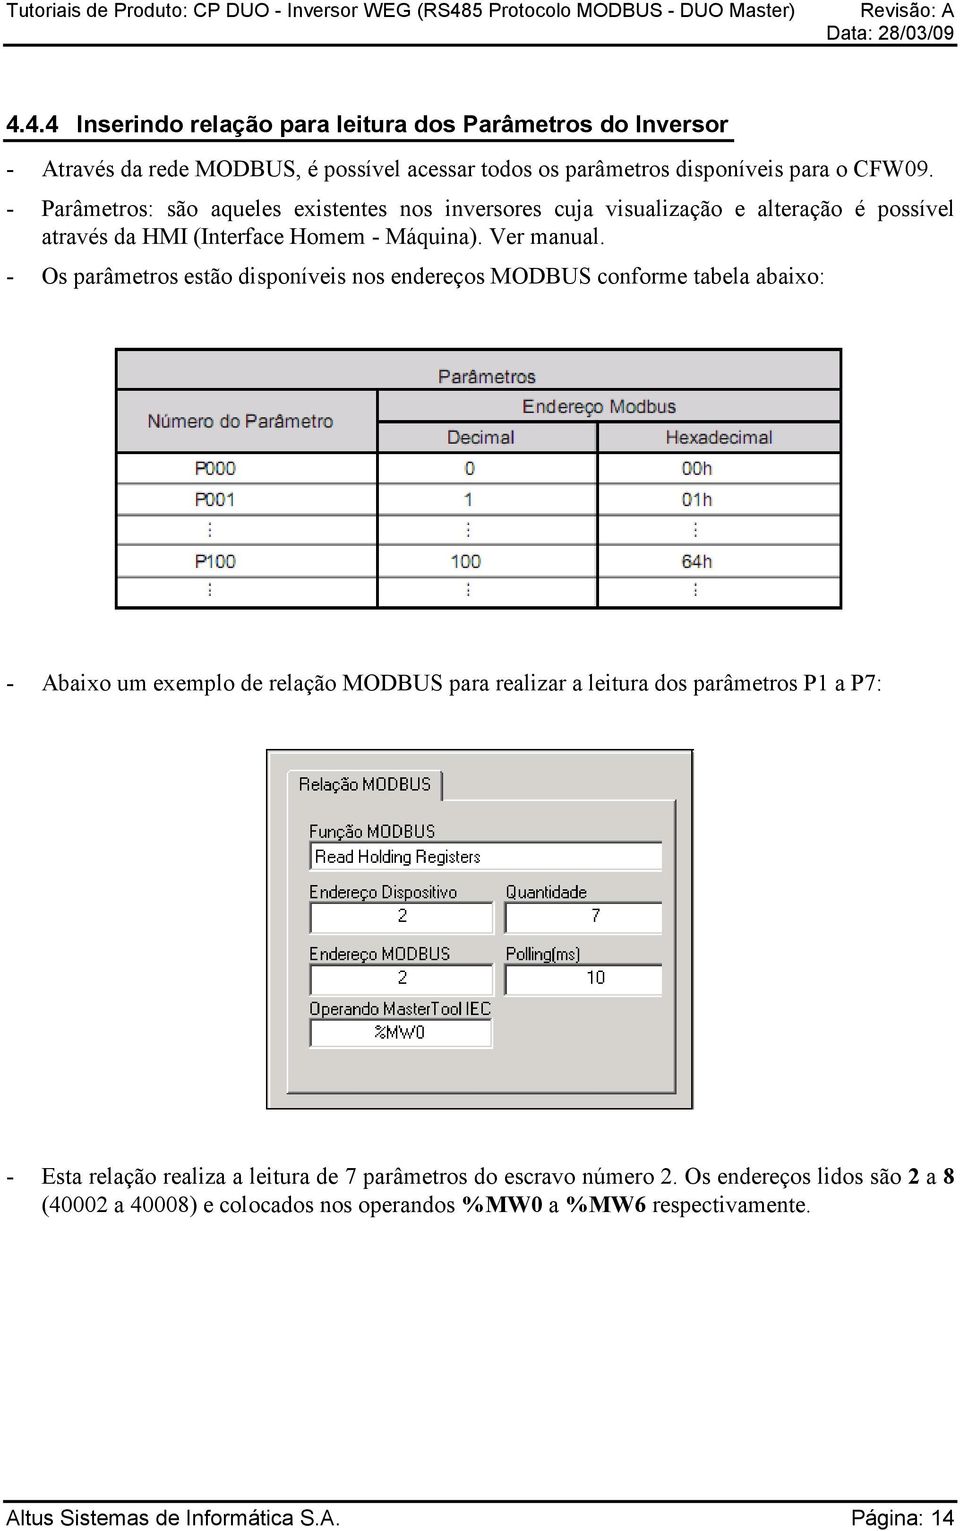 - Os parâmetros estão disponíveis nos endereços MODBUS conforme tabela abaixo: - Abaixo um exemplo de relação MODBUS para realizar a leitura dos parâmetros P1 a P7: -